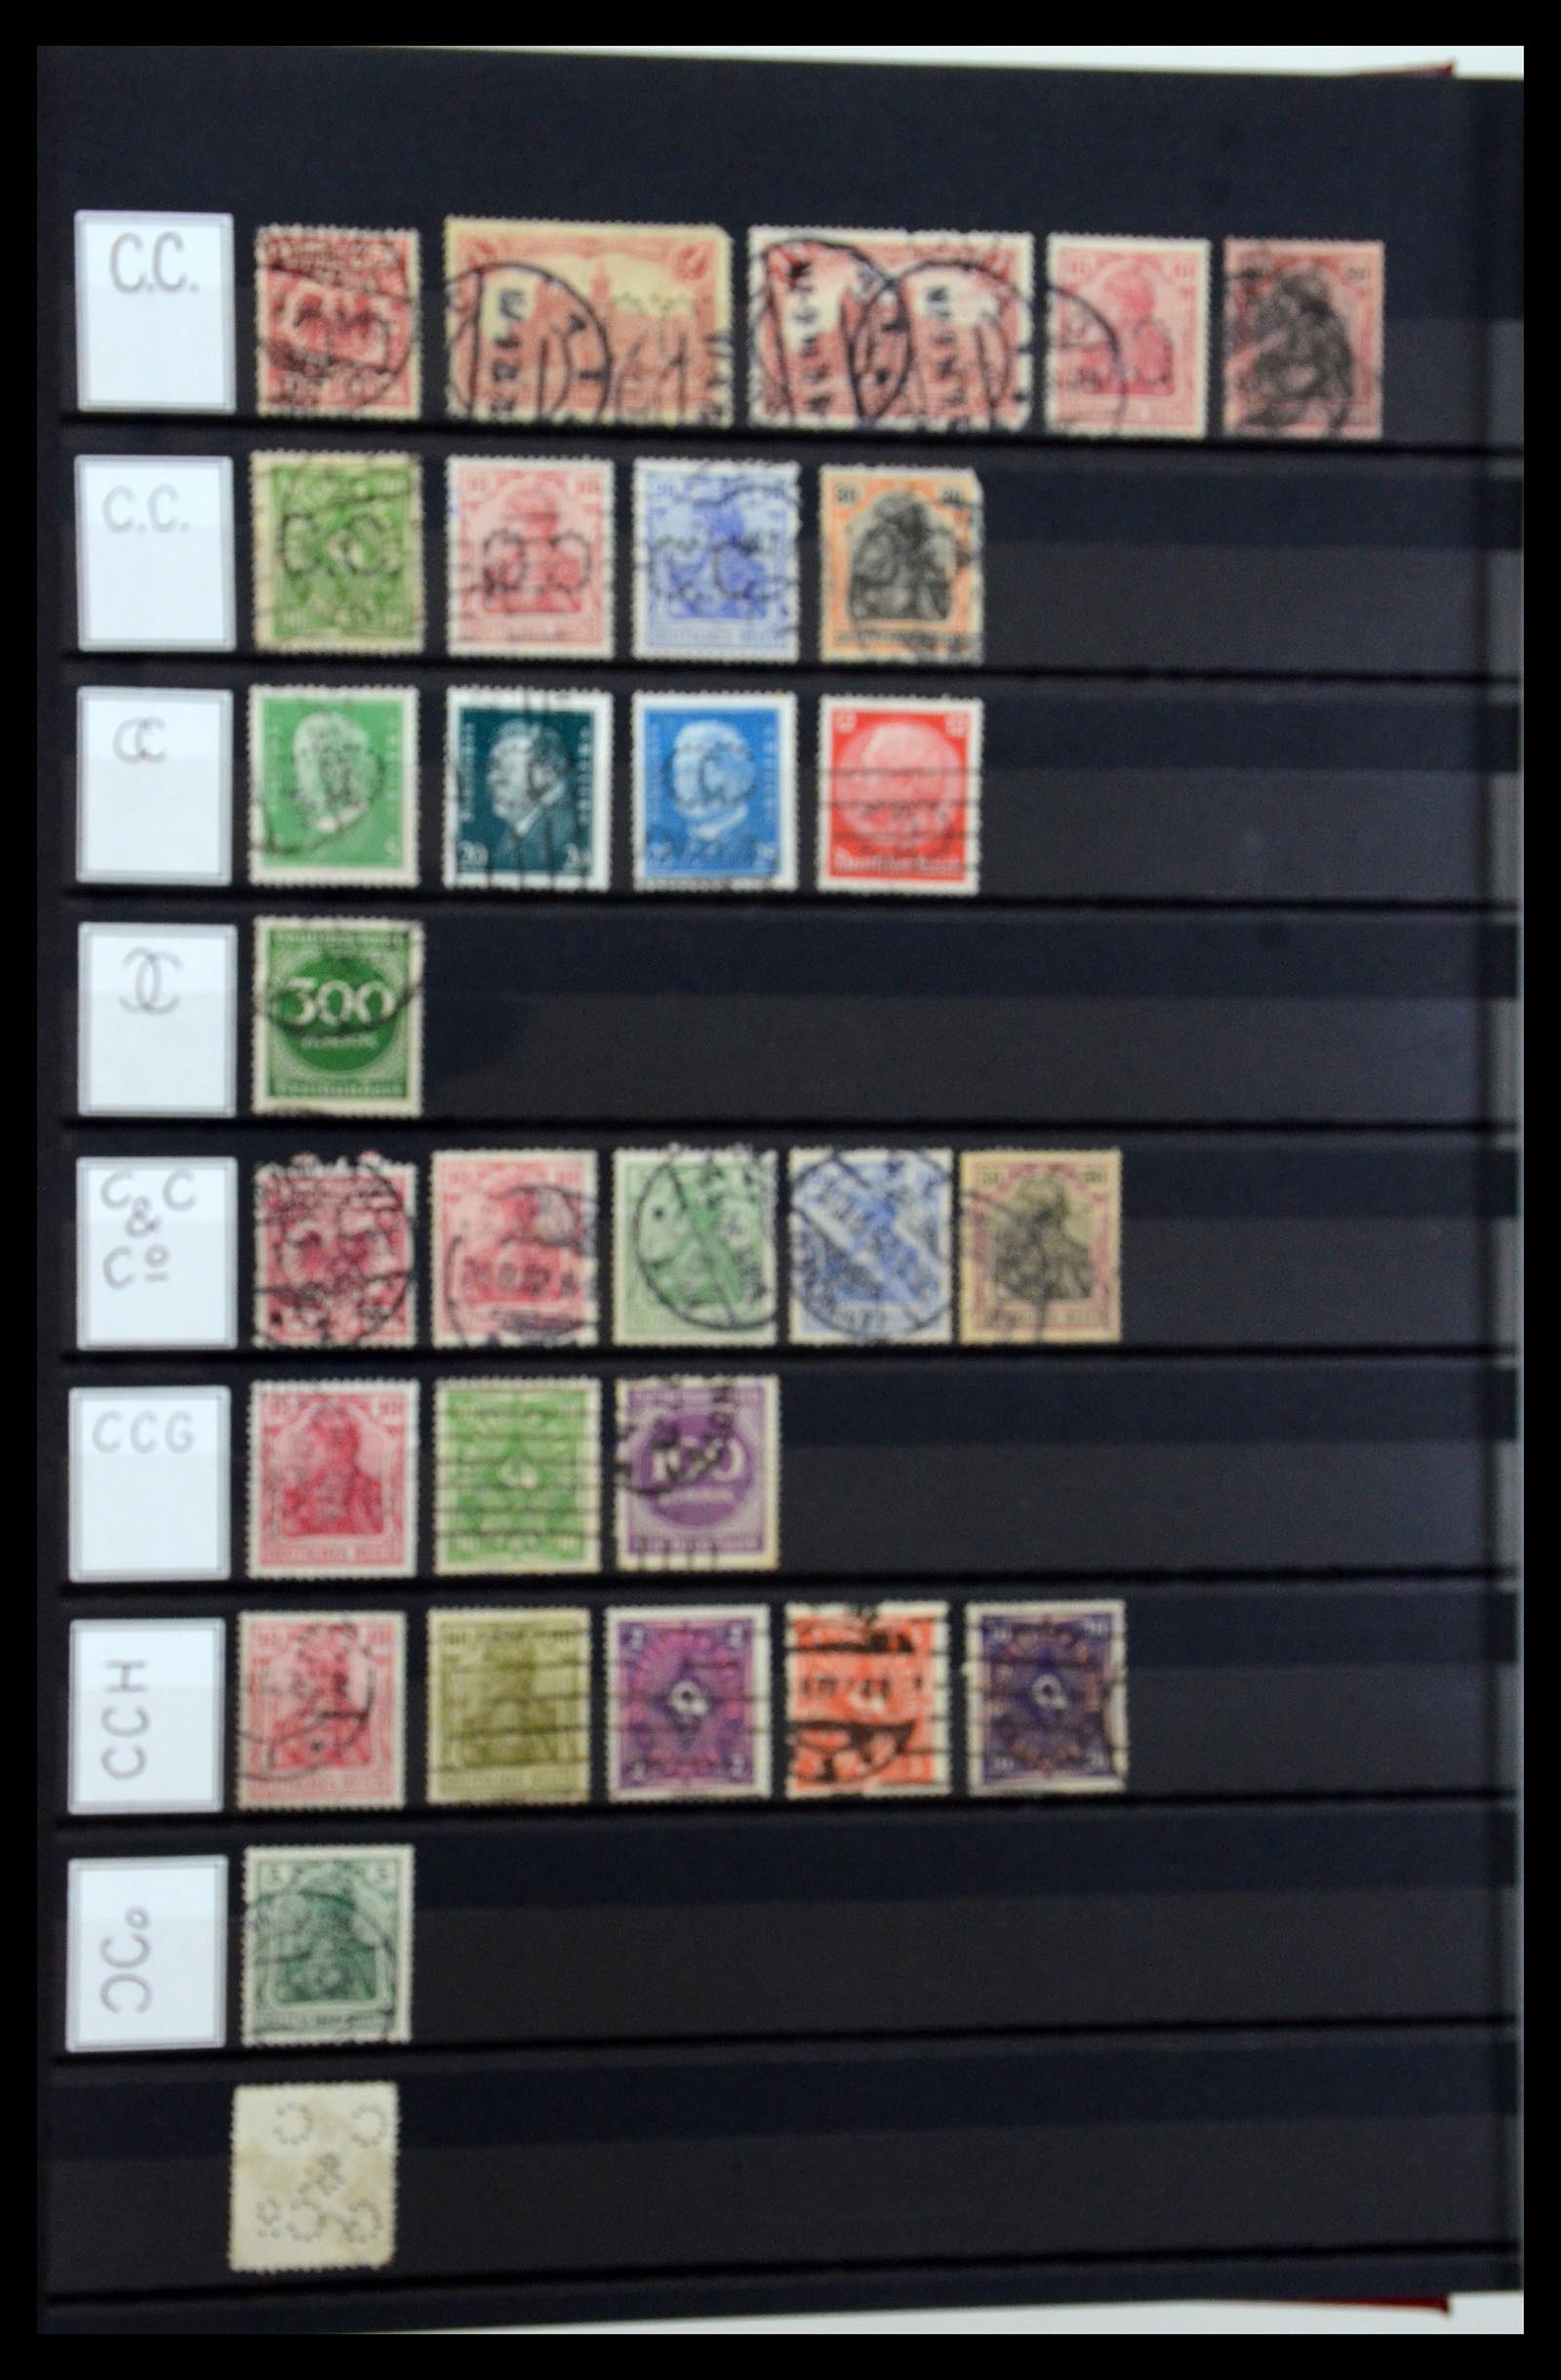 36405 064 - Stamp collection 36405 German Reich perfins 1880-1945.